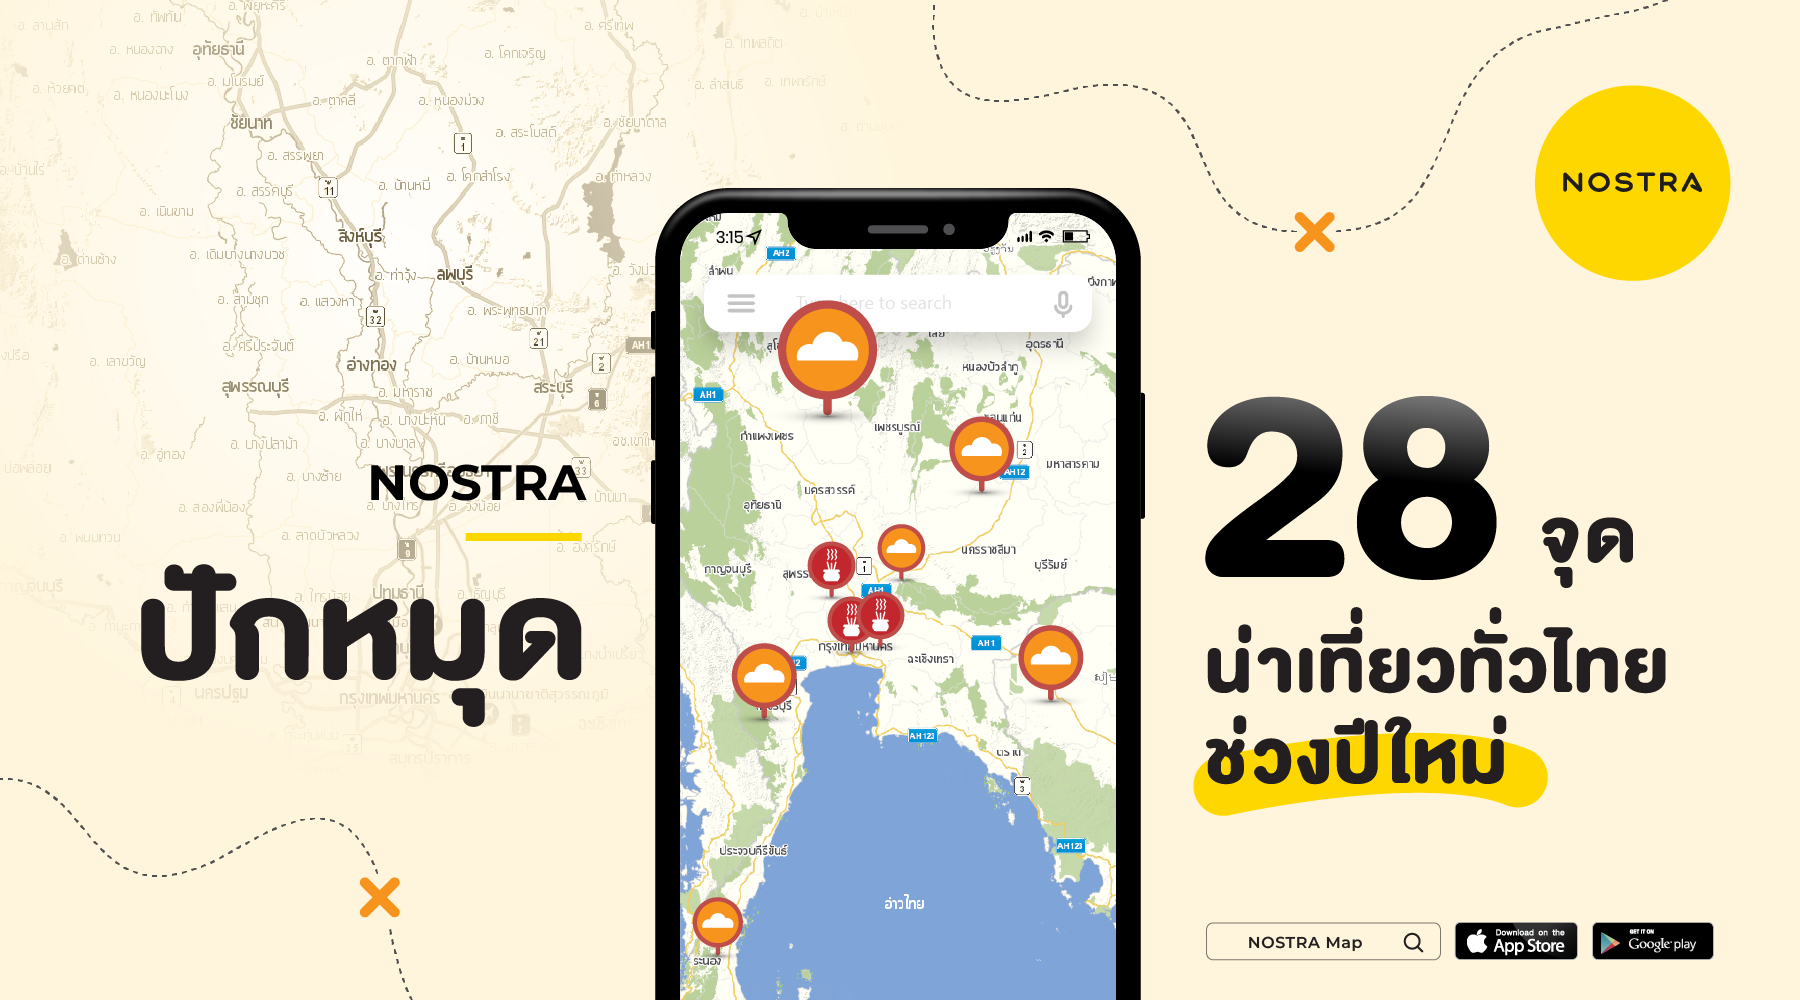 NOSTAR Map ปักหมุด 28 จุดน่าเที่ยวทั่วไทยช่วงปีใหม่ แชร์พิกัดจุดชาร์จ EV อำนวยความสะดวกรับช่วงหยุดยาว